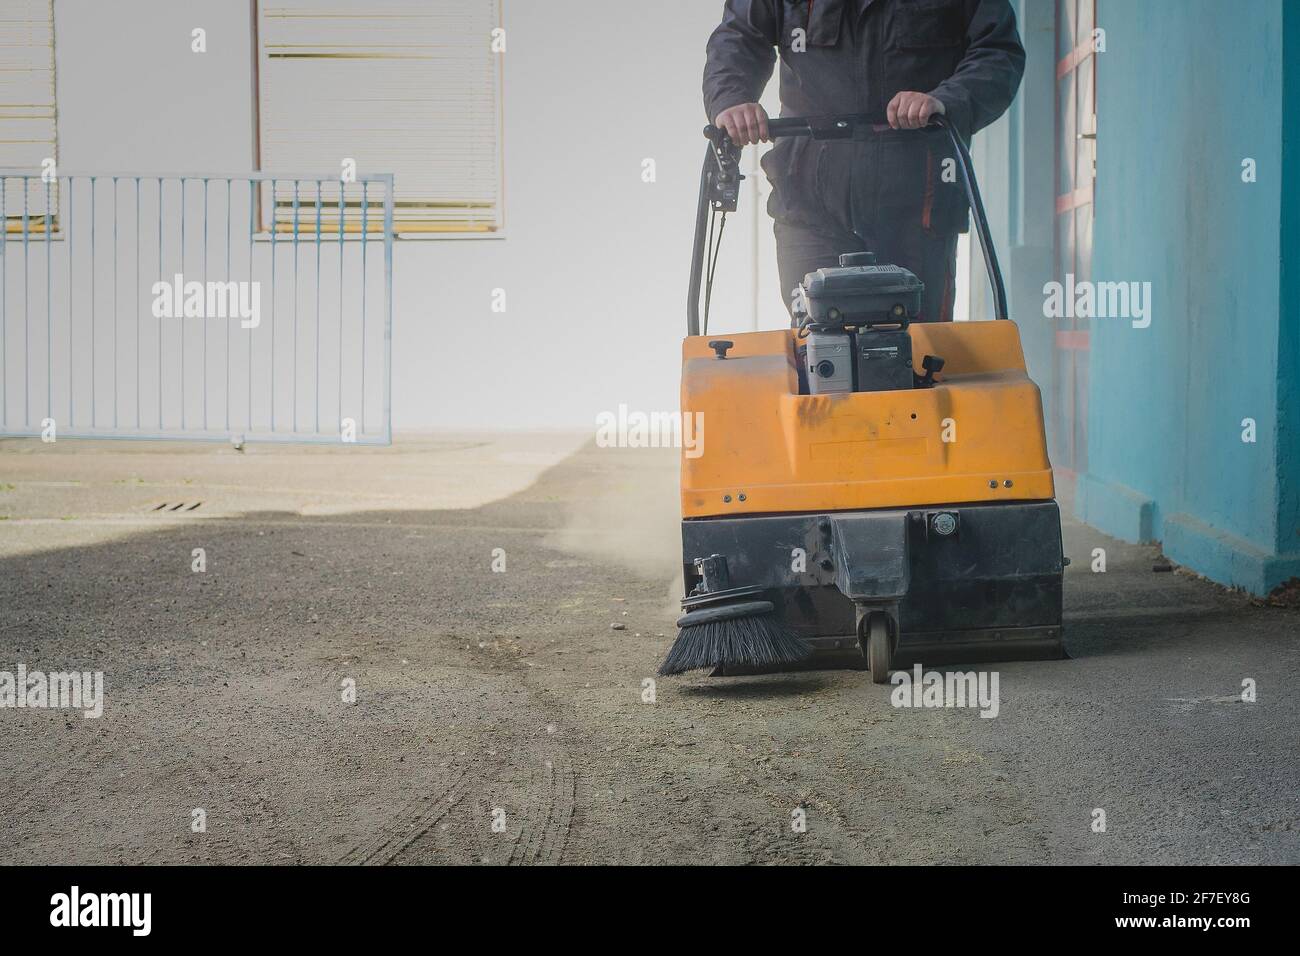 Una persona sta spingendo una spazzatrice industriale alimentata a benzina arancione su asfalto sporco nel tentativo di pulirlo da detriti e sabbia Foto Stock